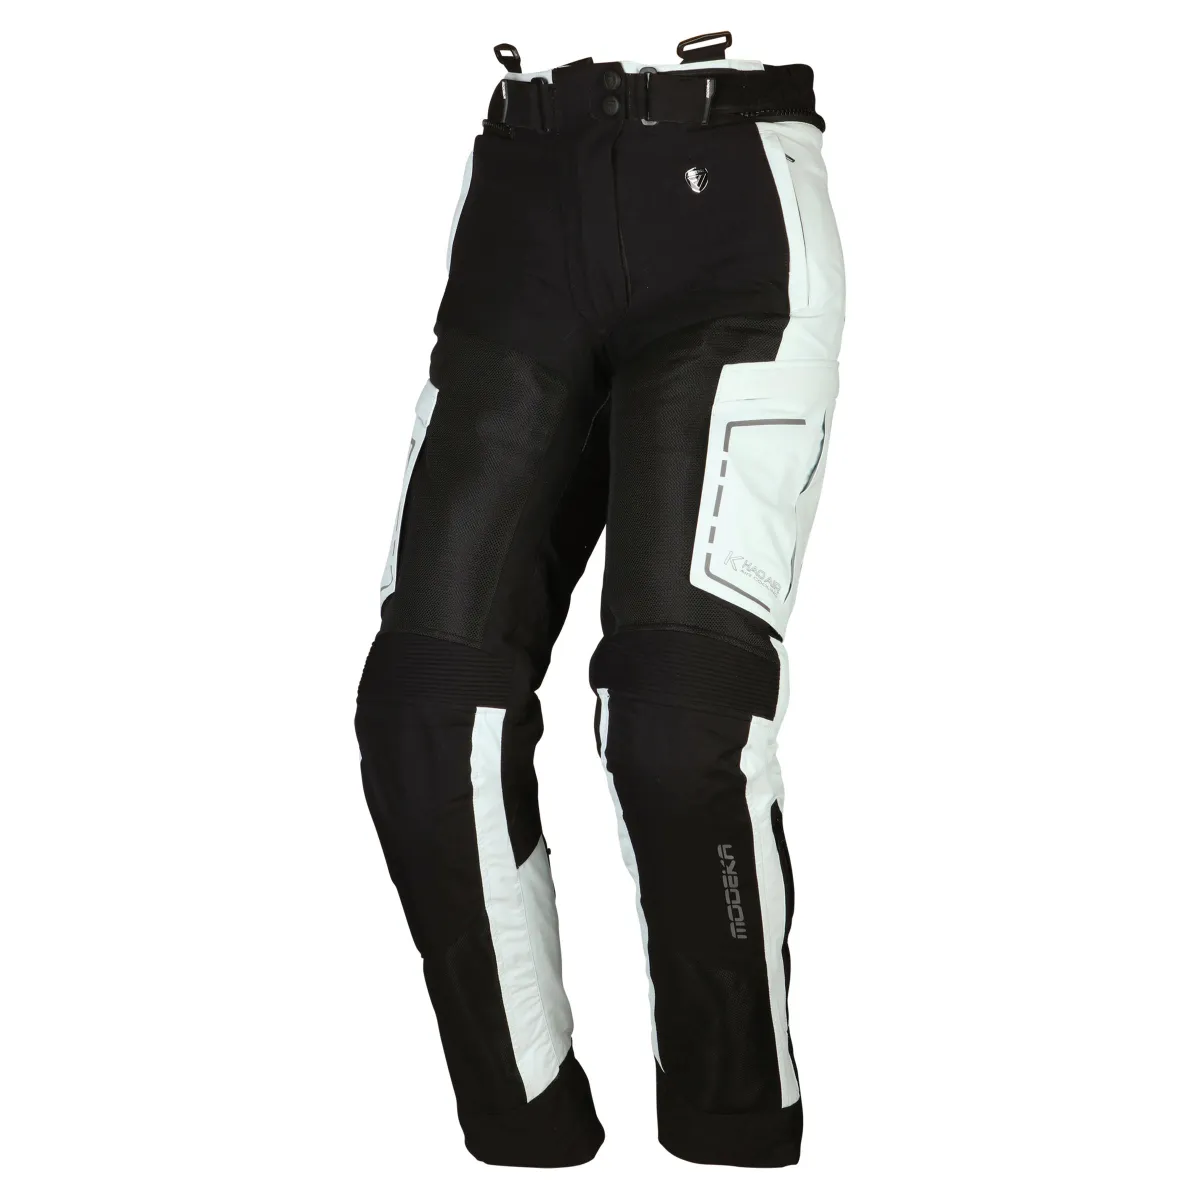 Motocyklové kalhoty Modeka Khao Air Lady